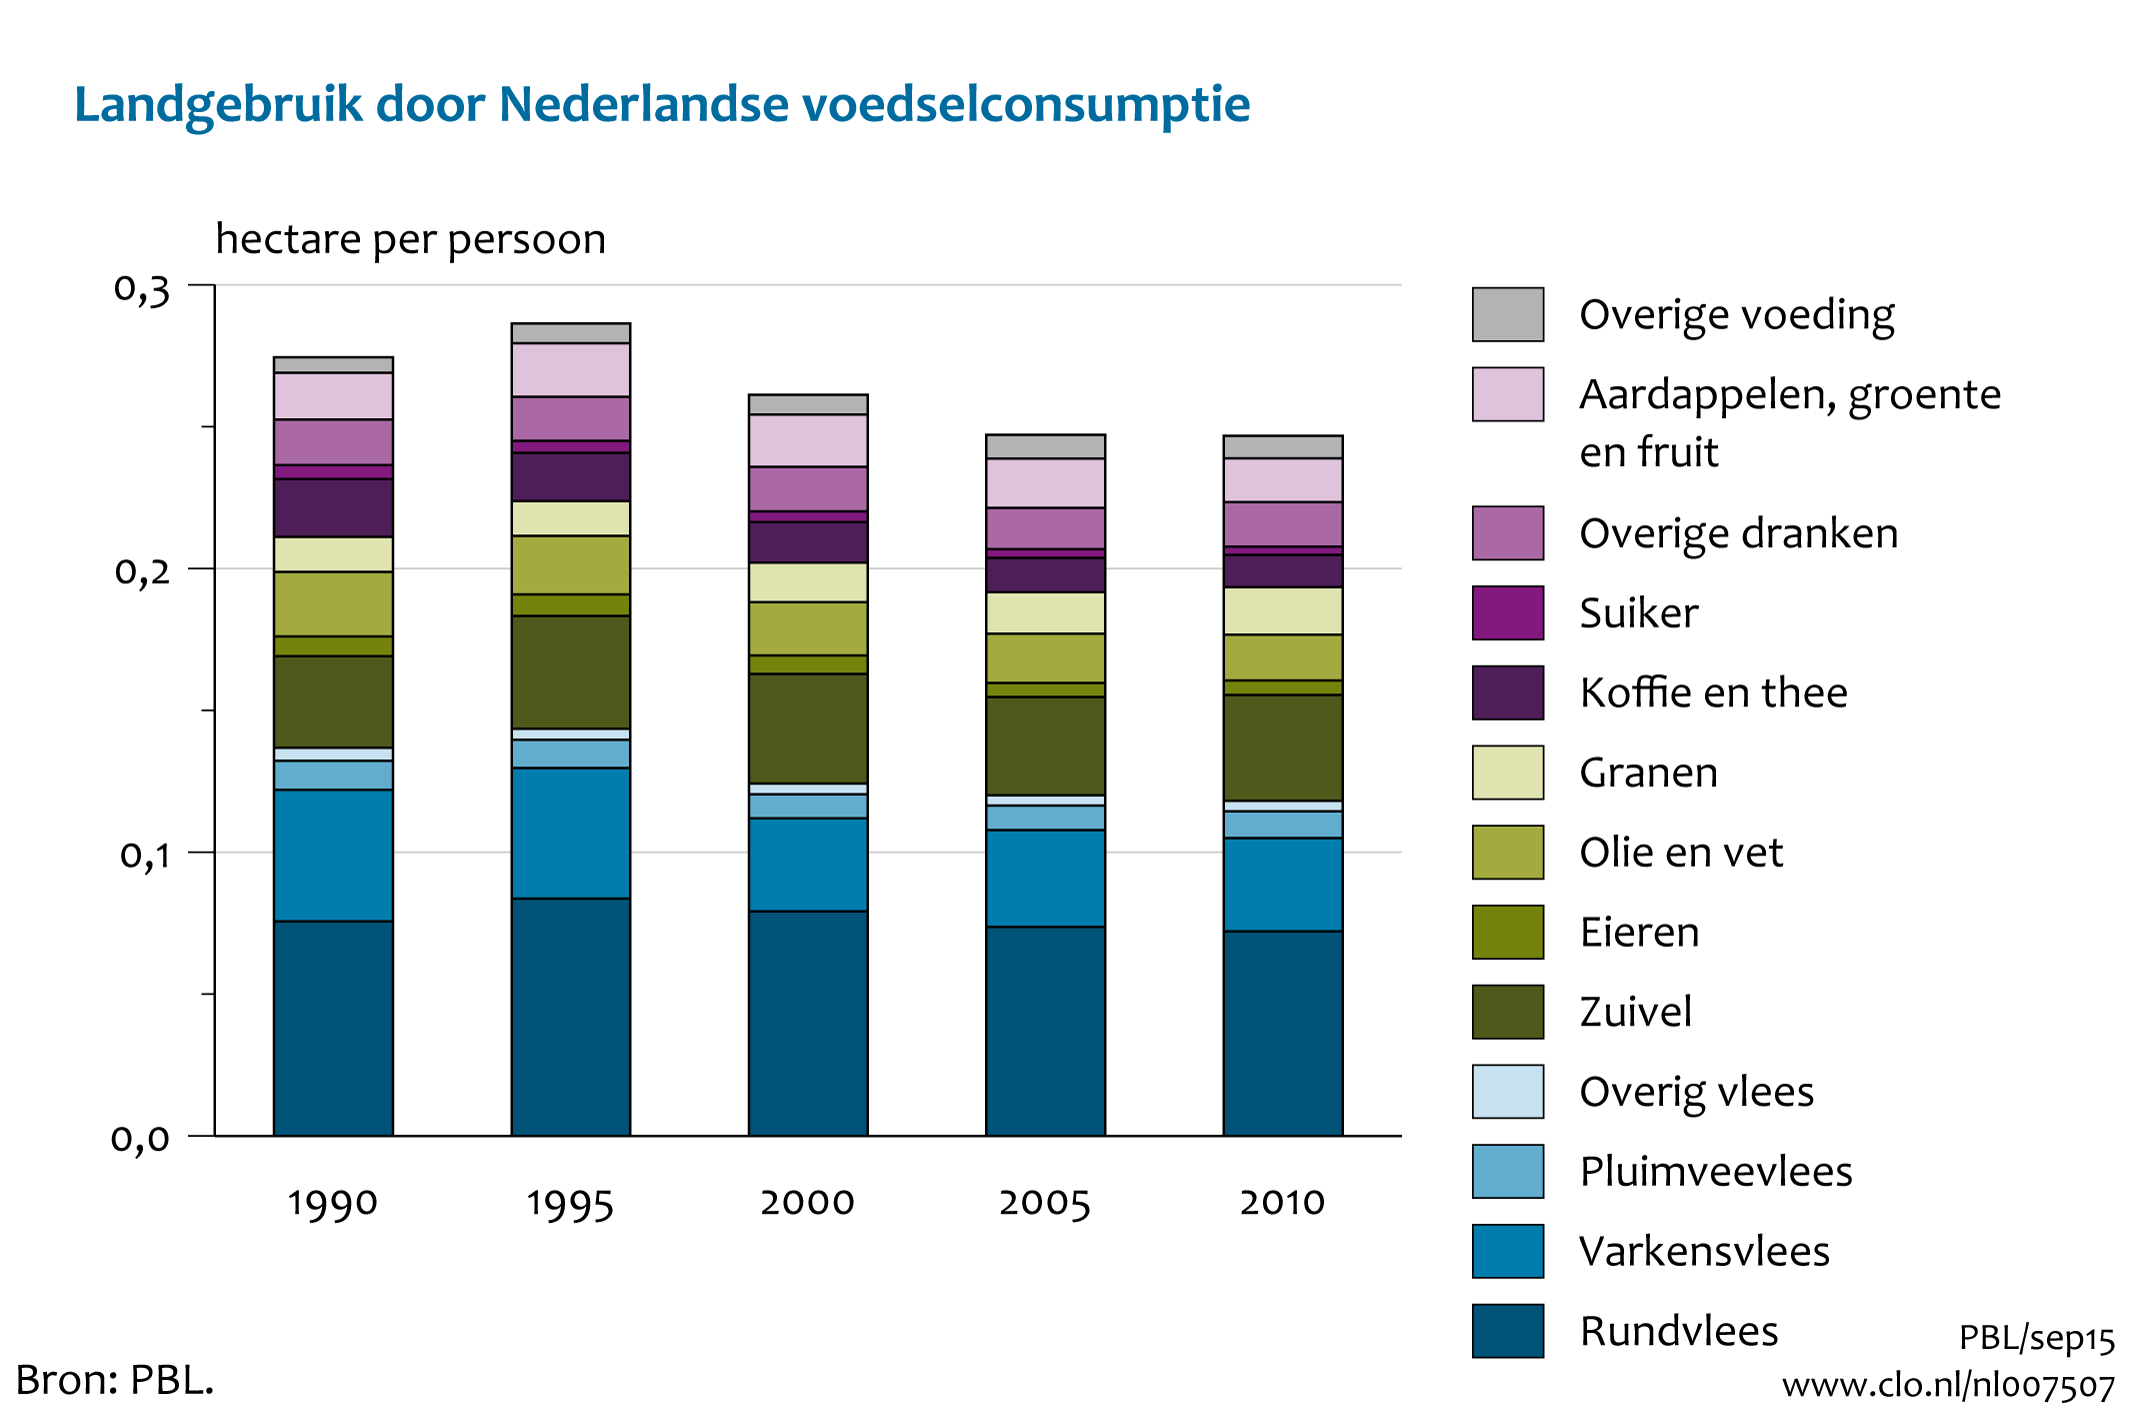 Figuur Mondiaal landgebruik Nederlandse consumptie van voedsel. In de rest van de tekst wordt deze figuur uitgebreider uitgelegd.